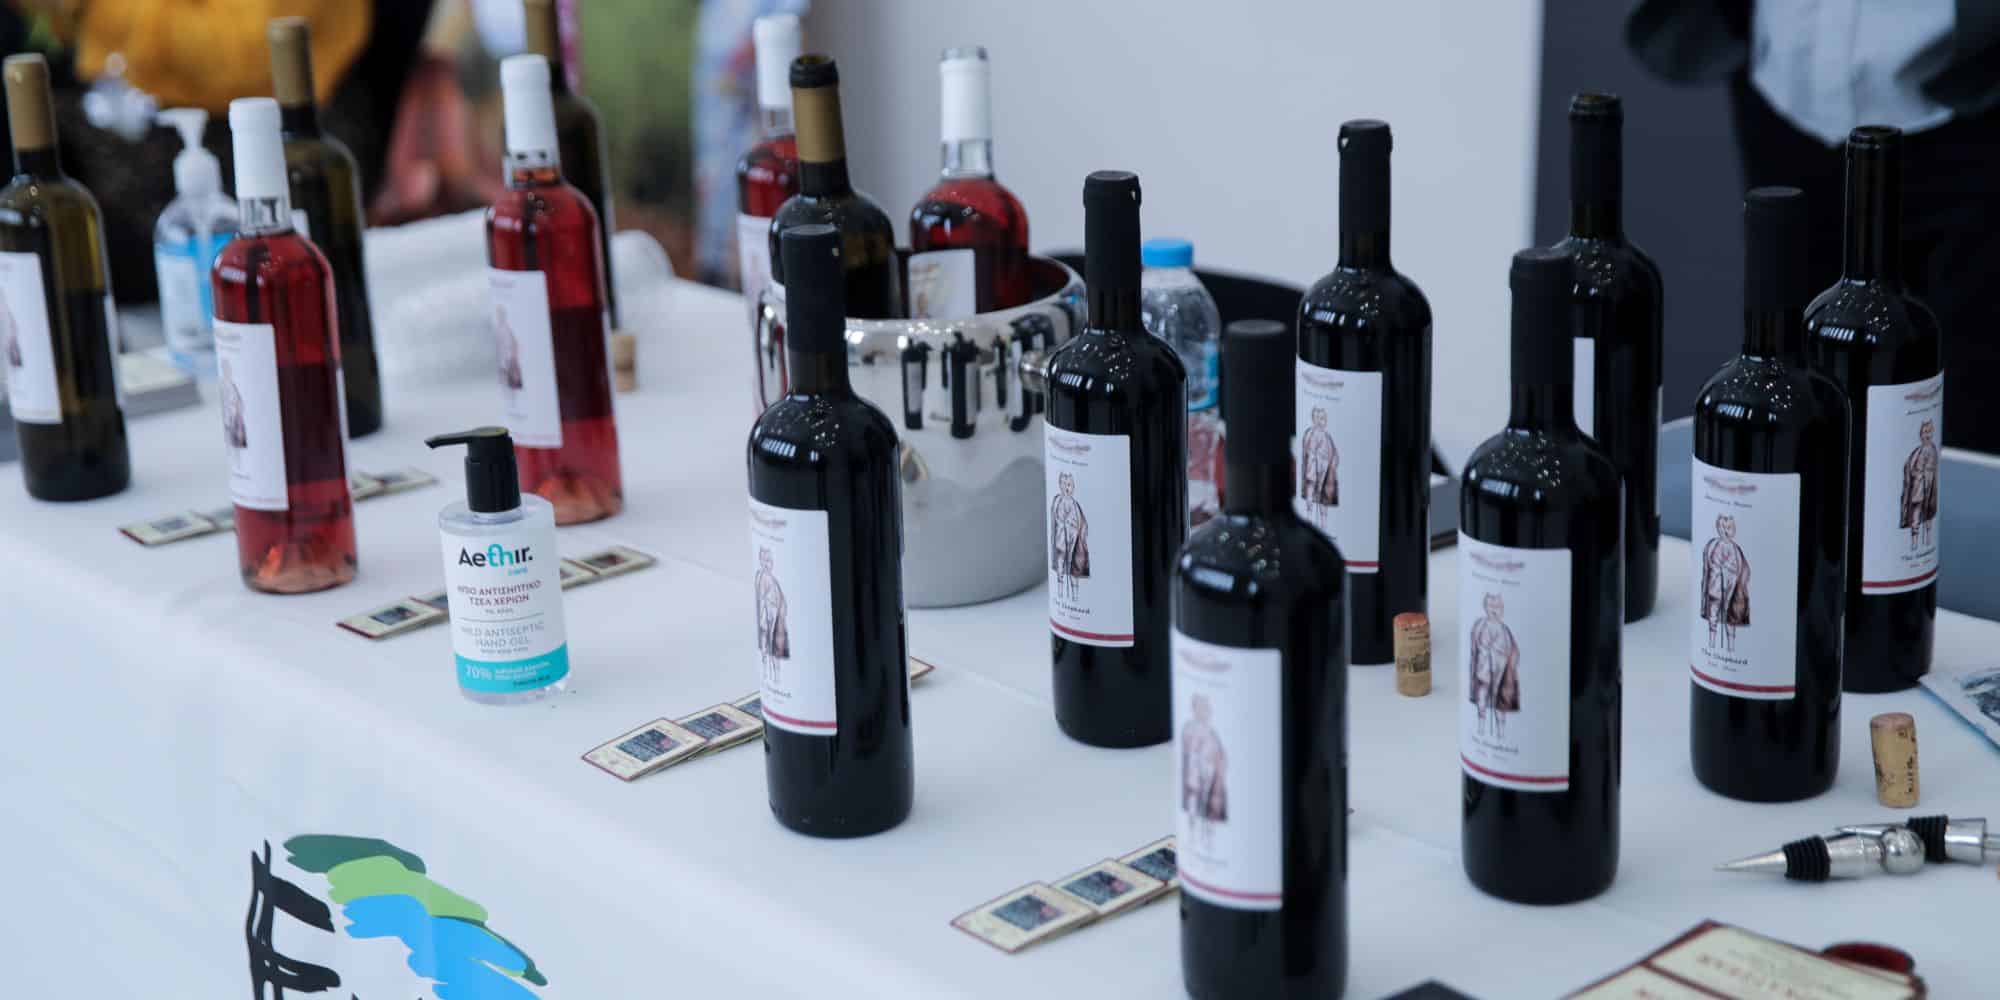 Μπουκάλια με κρασί σε έκθεση στο Ζάππειο